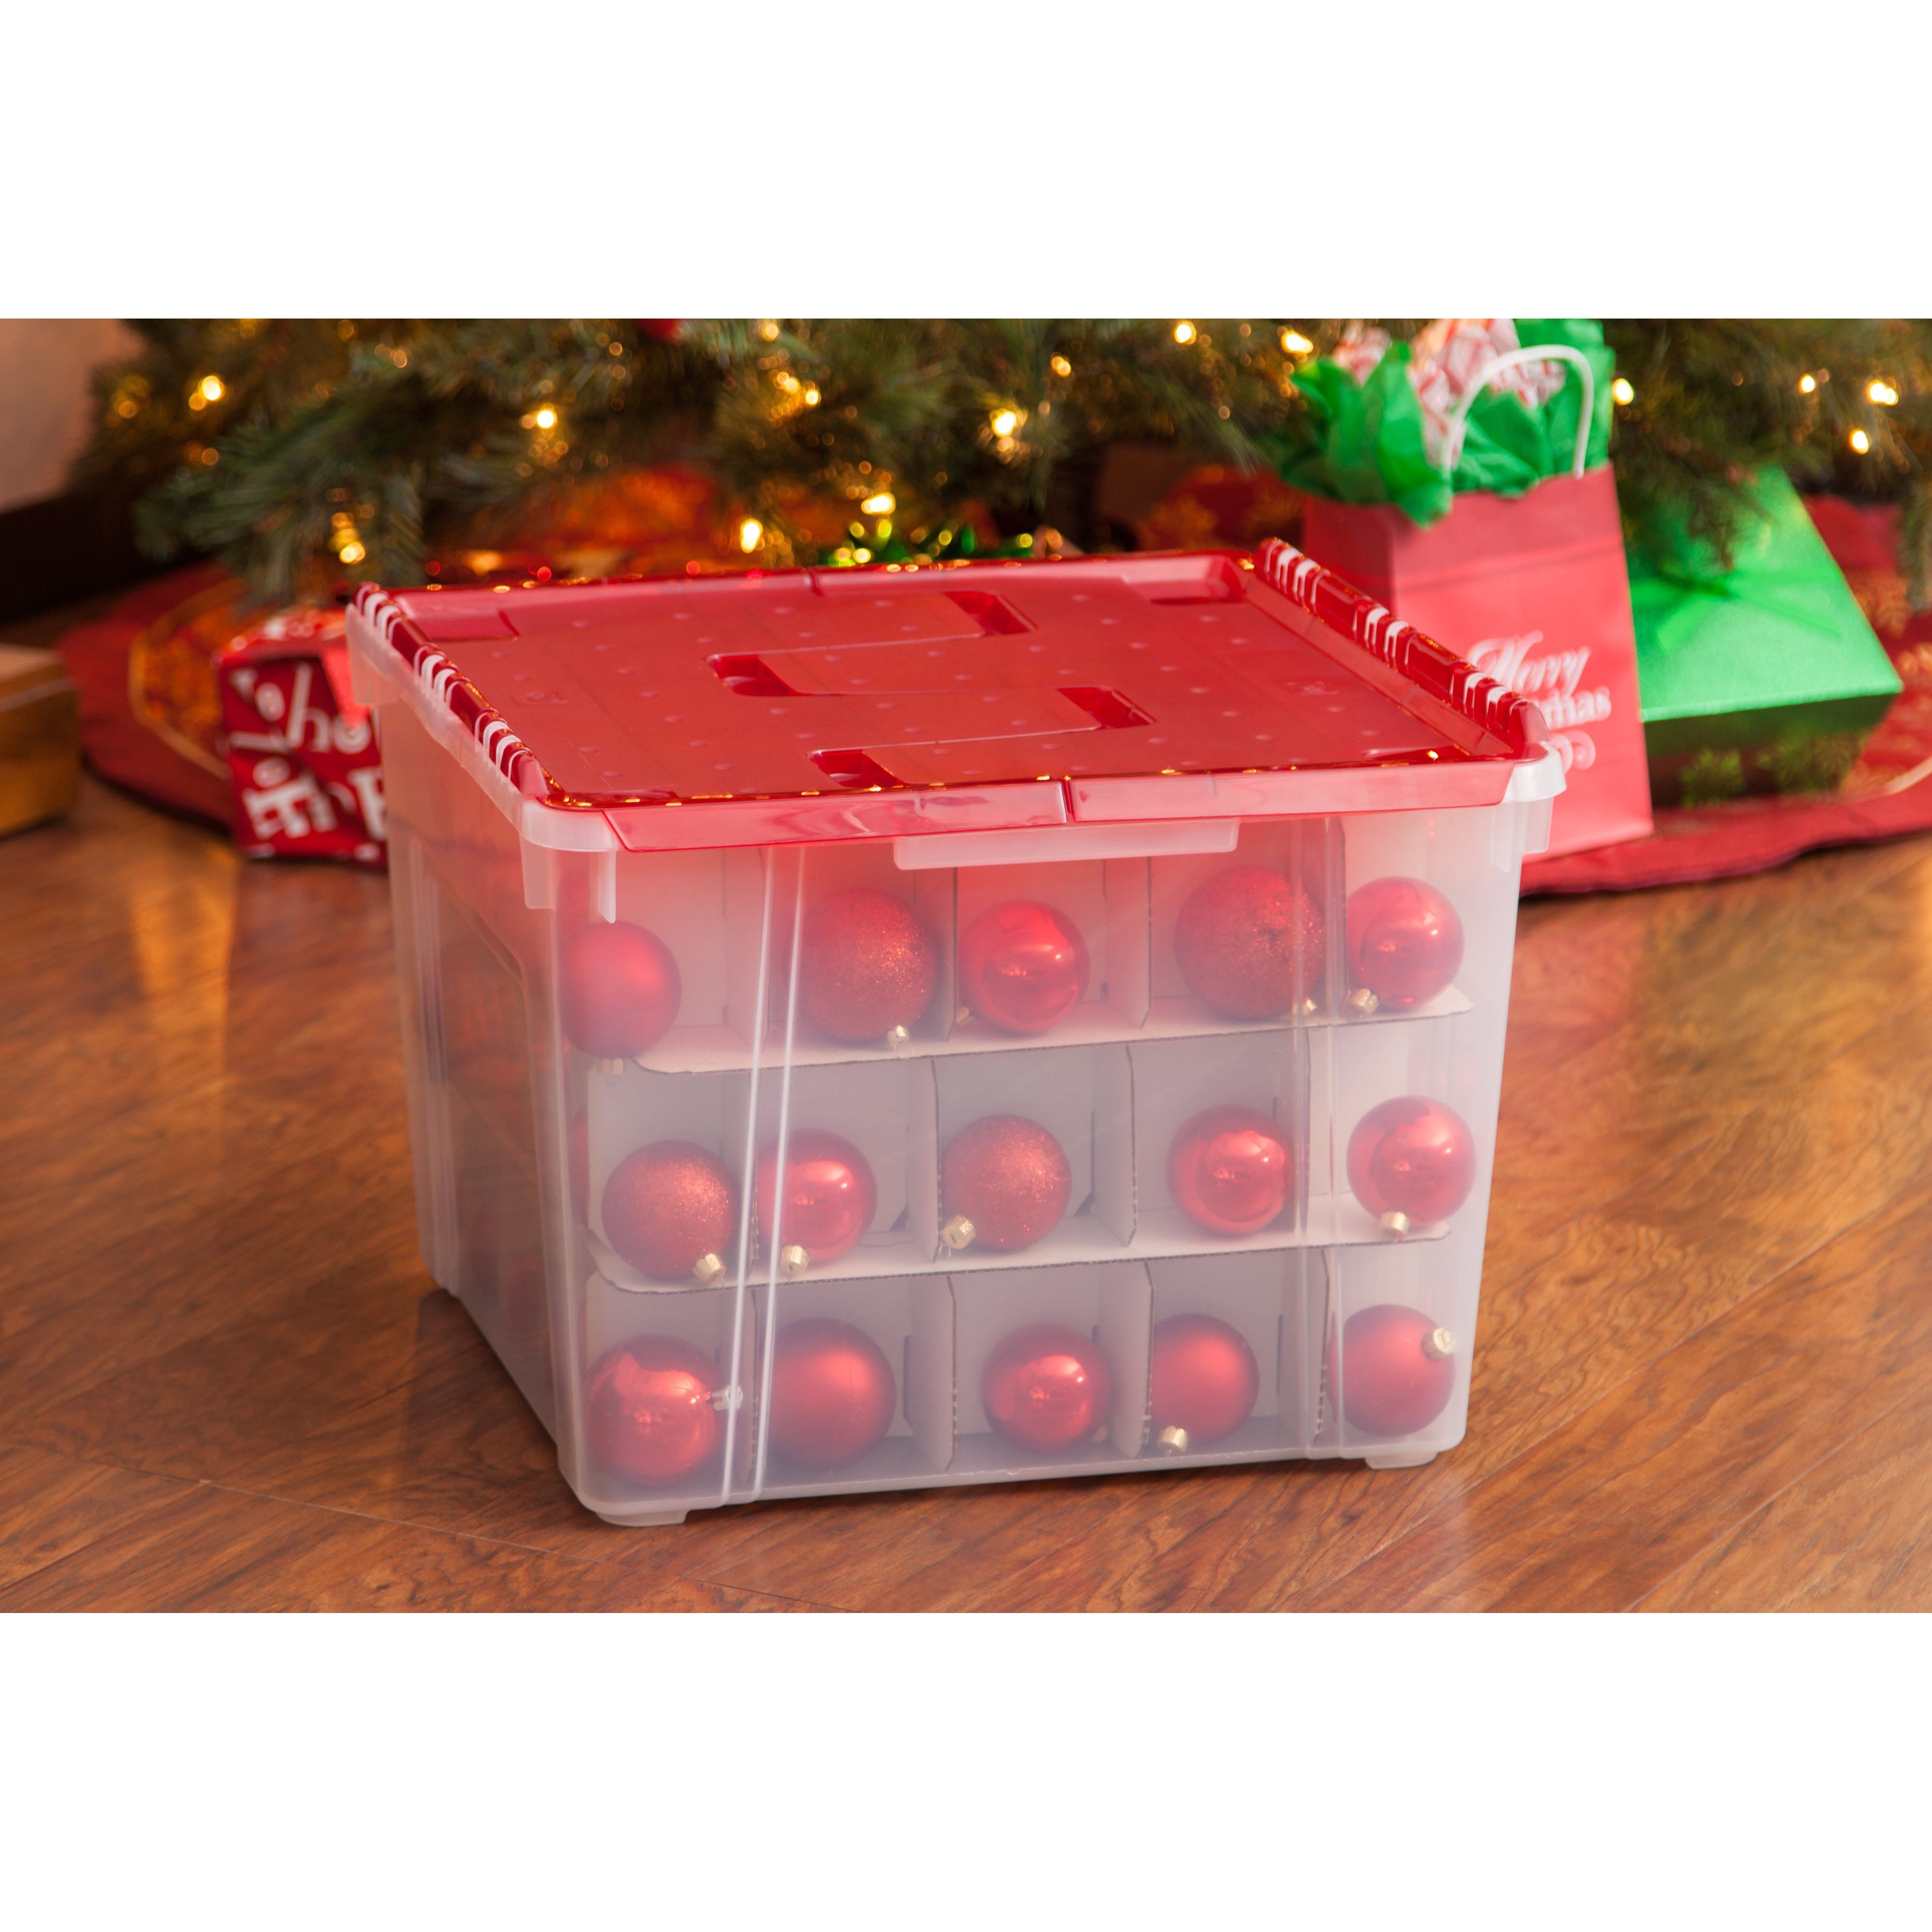 Iris Christmas Tree Storage Box
 IRIS Ornament Storage Box & Reviews